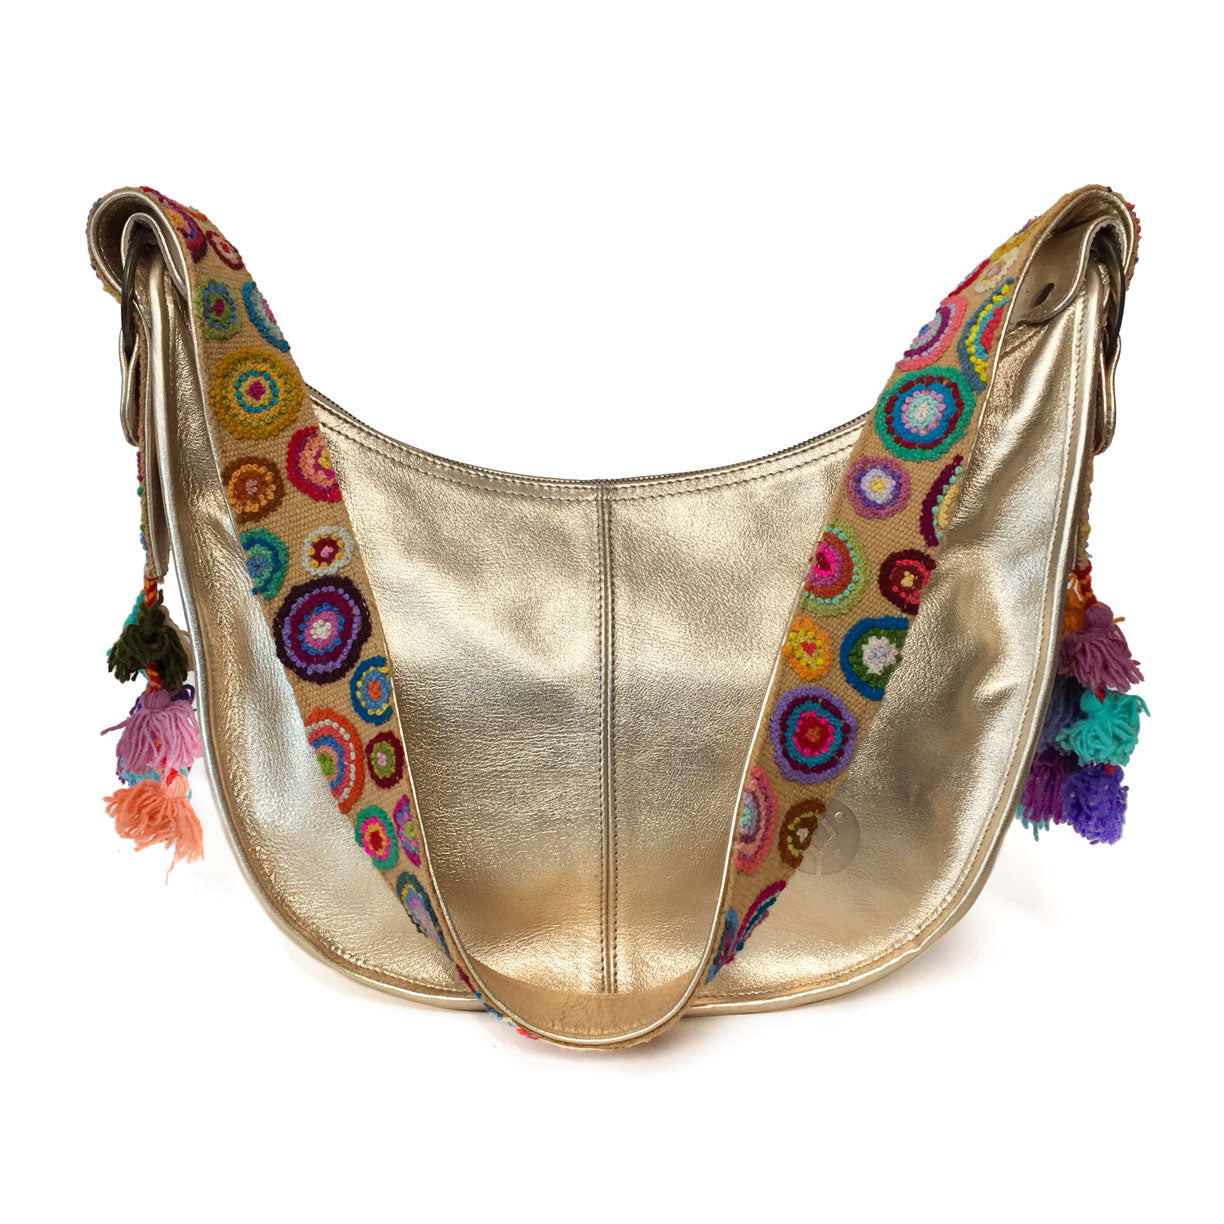 Bolsa de piel amplia para mujer de asa larga crossbody con cierre y artesanía de bordados peruanos color dorado